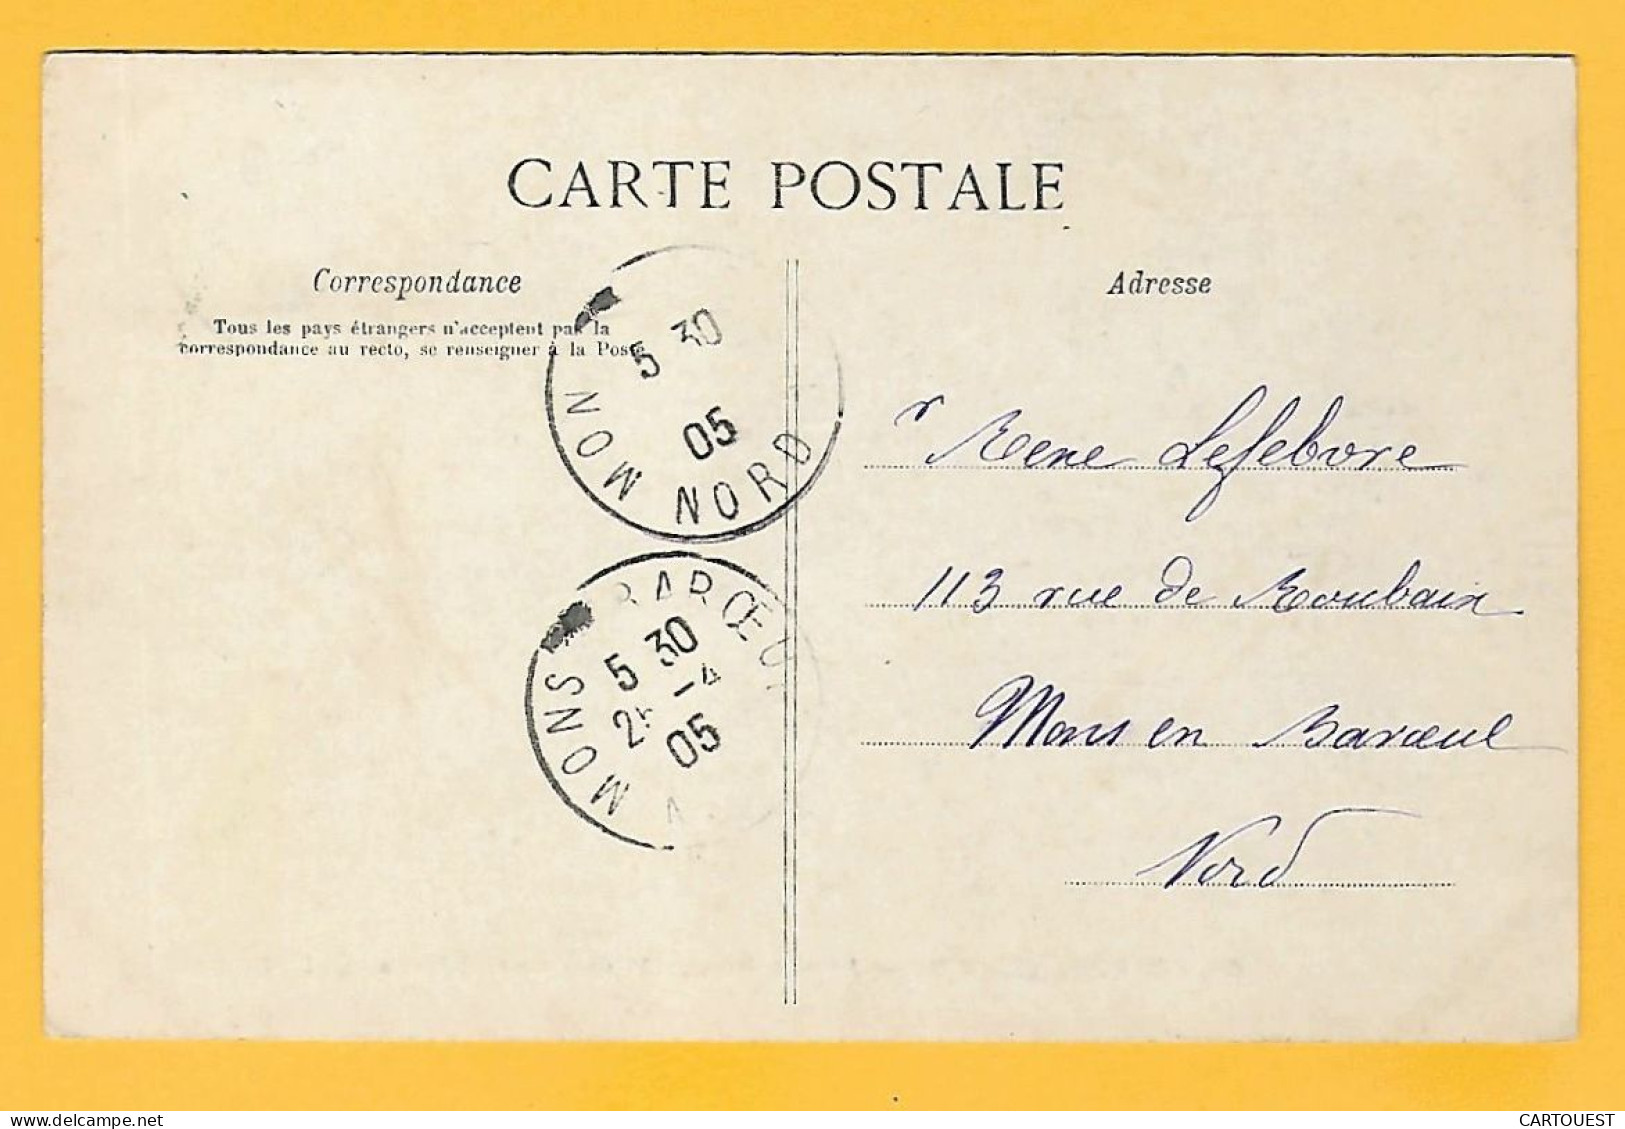 CPA NOINTEL - Entrée Principale Château - 1905 - Nointel